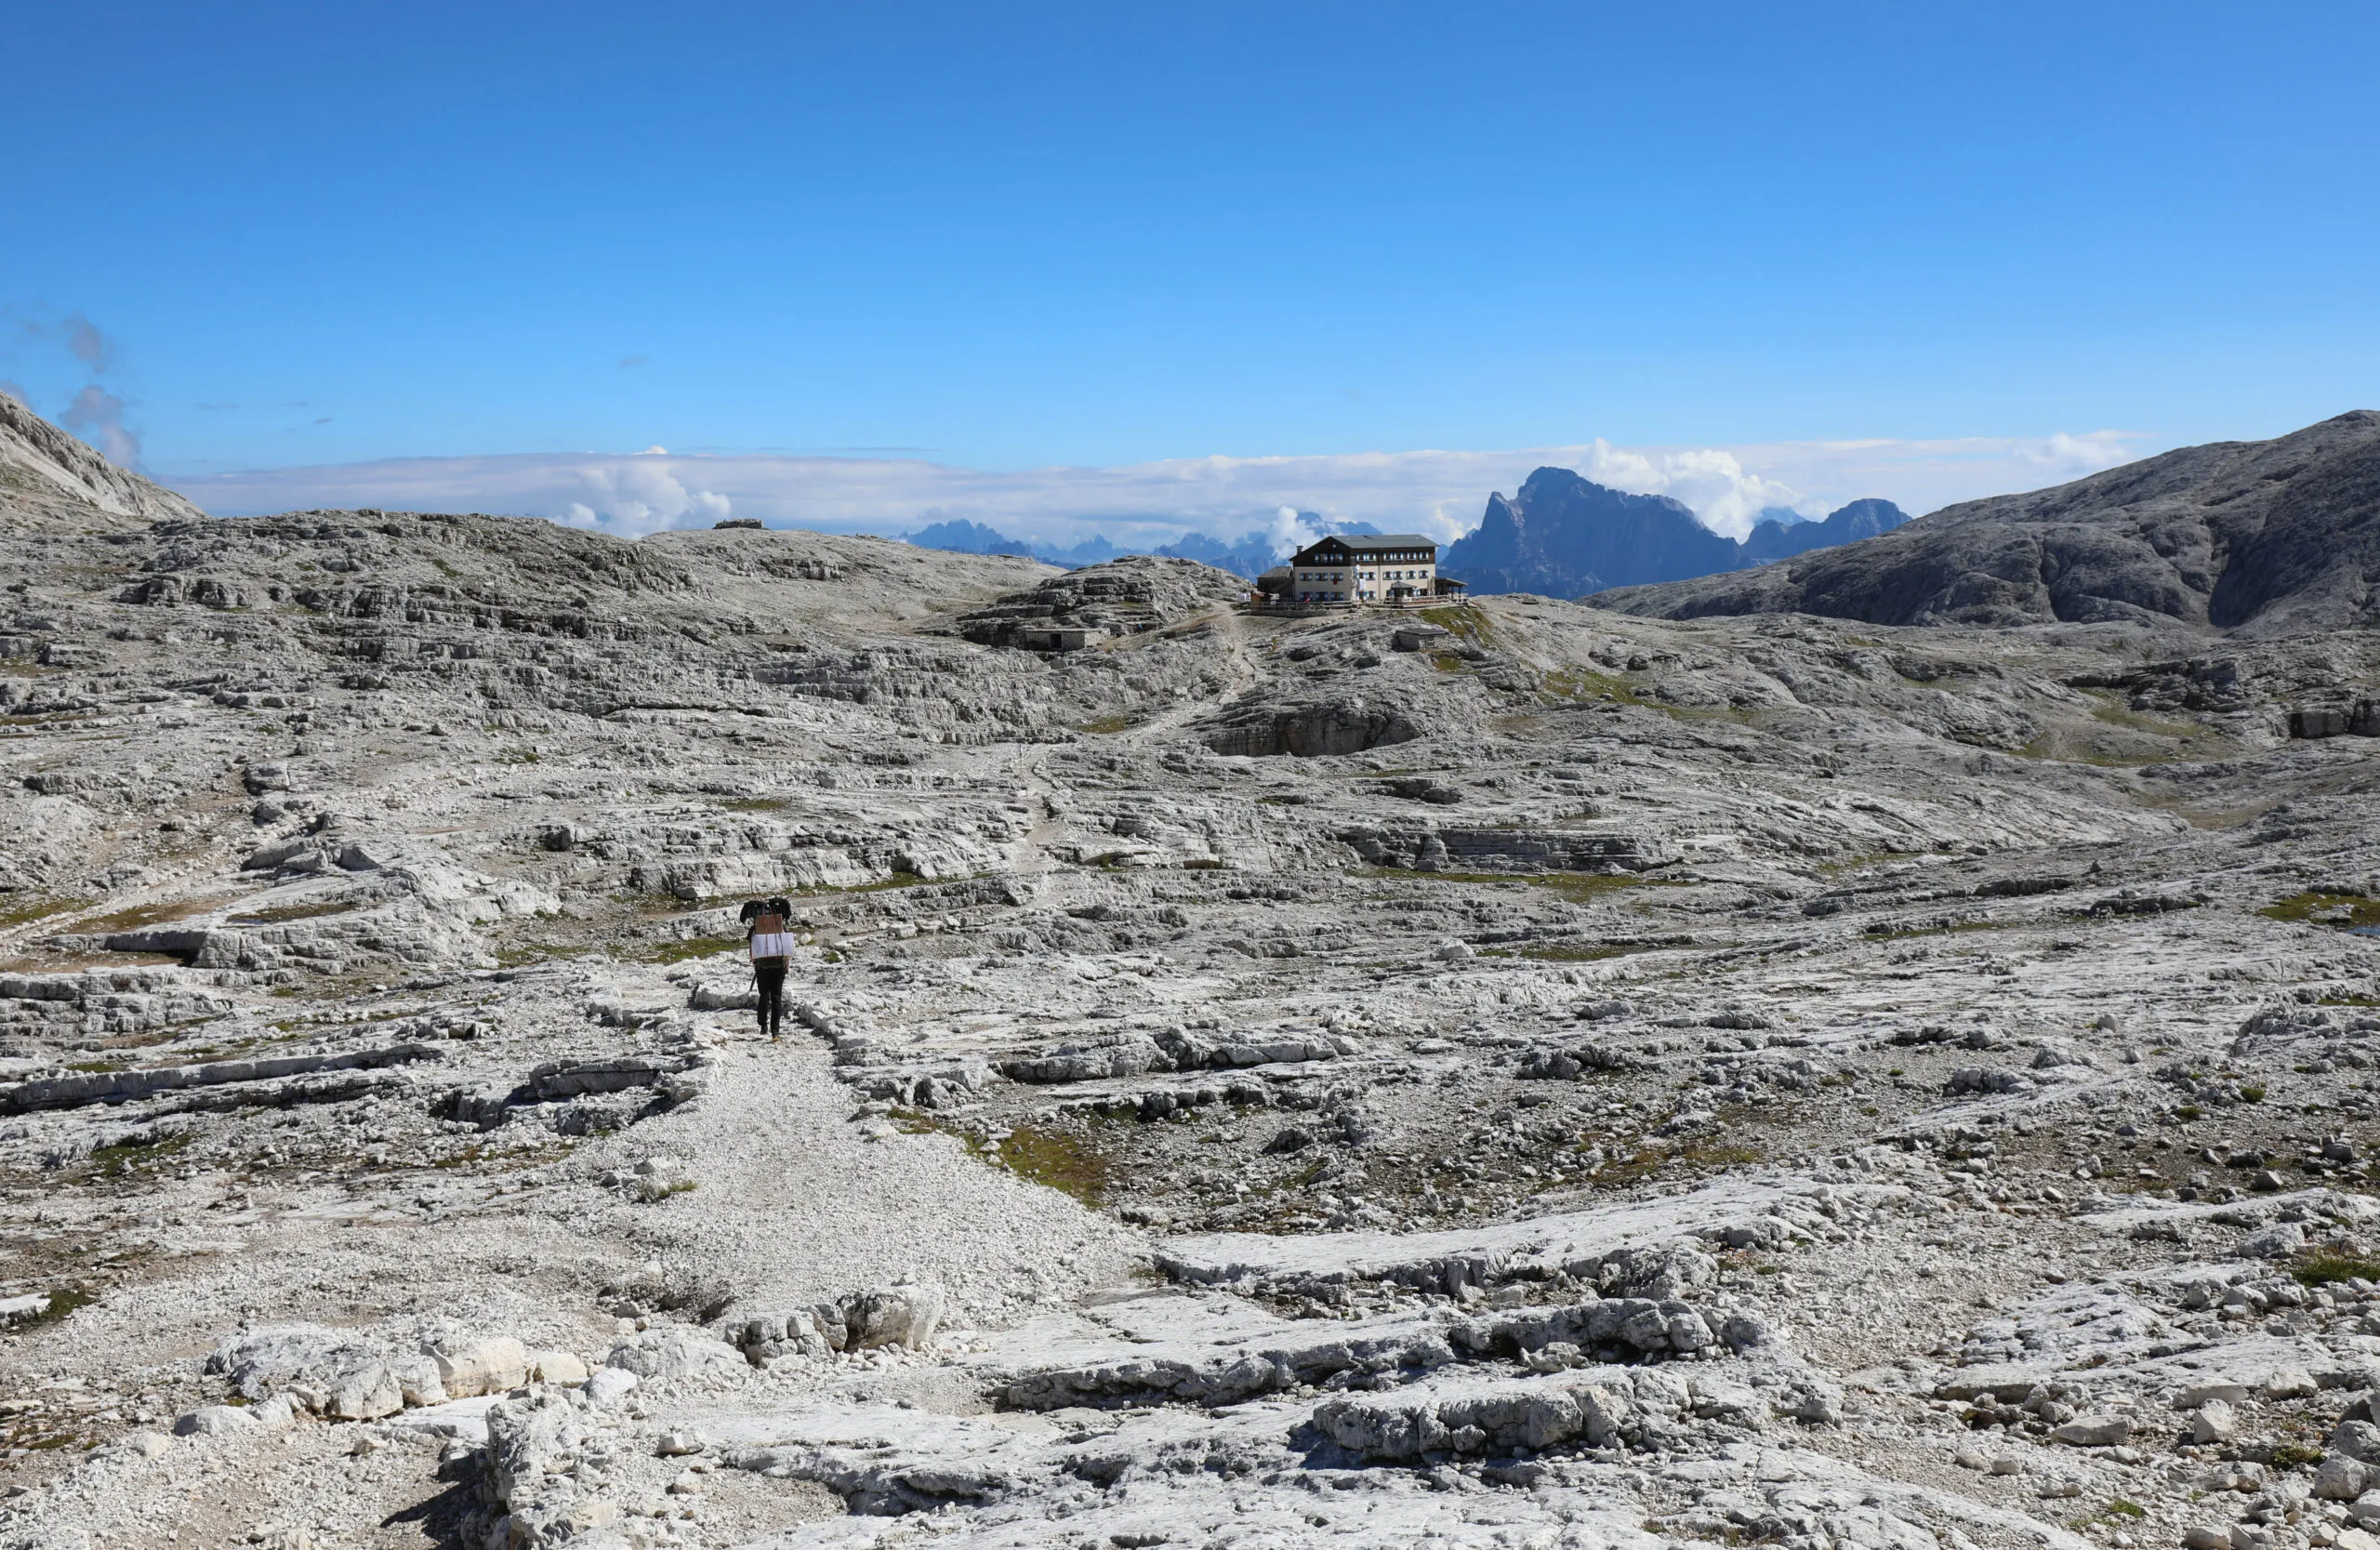 øde, nesten måneaktig panorama over de europeiske alpene om sommeren og en godstransportør som går langs den steinete stien